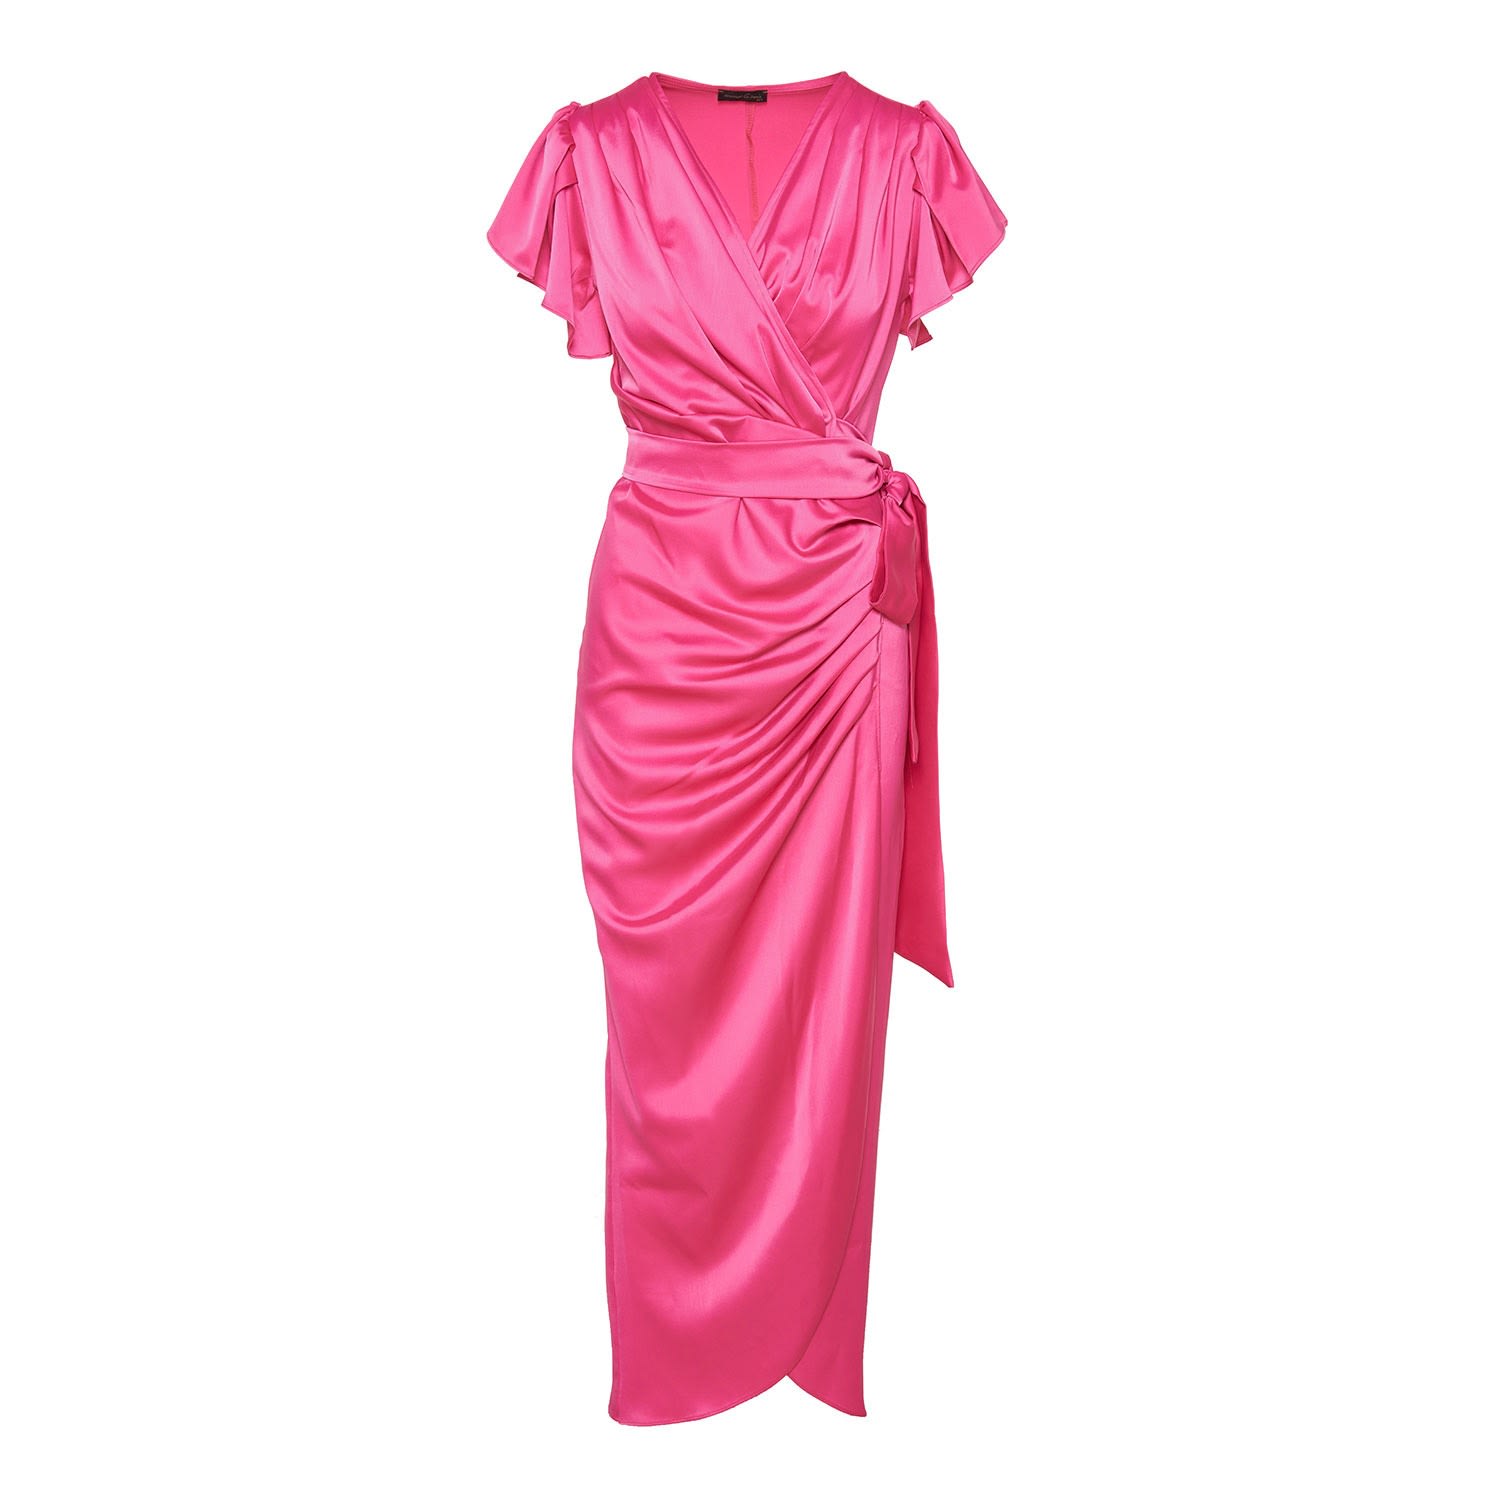 Women’s Pink / Purple Wrap Cocktail Pink Long Dress M/L Concept a Trois